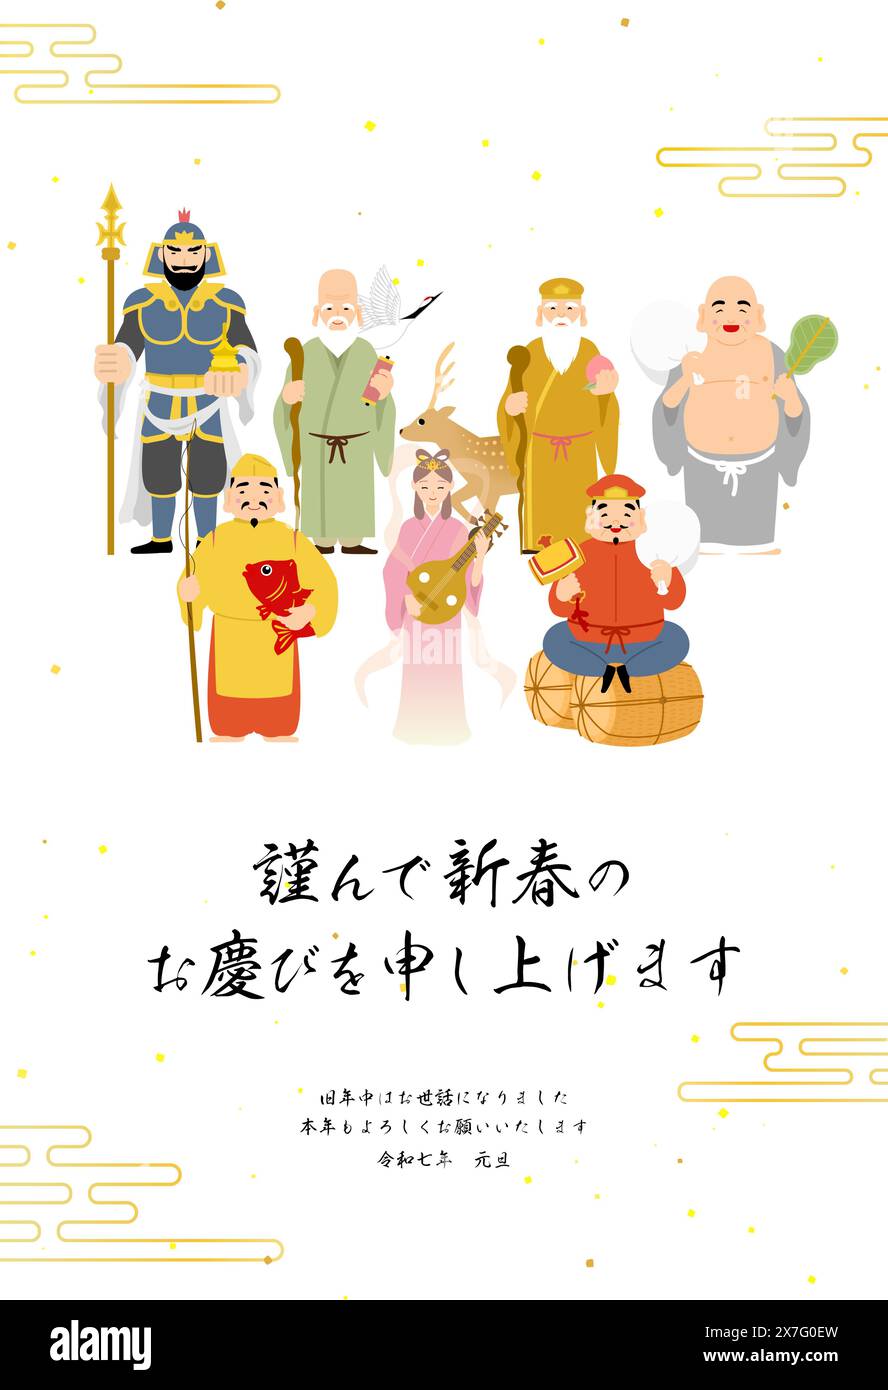 2025 Japanische Neujahrskarte, Sieben Glücksgötter und Hintergrund im japanischen Stil - Übersetzung: Happy New Year, nochmals vielen Dank in diesem Jahr. Reiwa 7. Stock Vektor